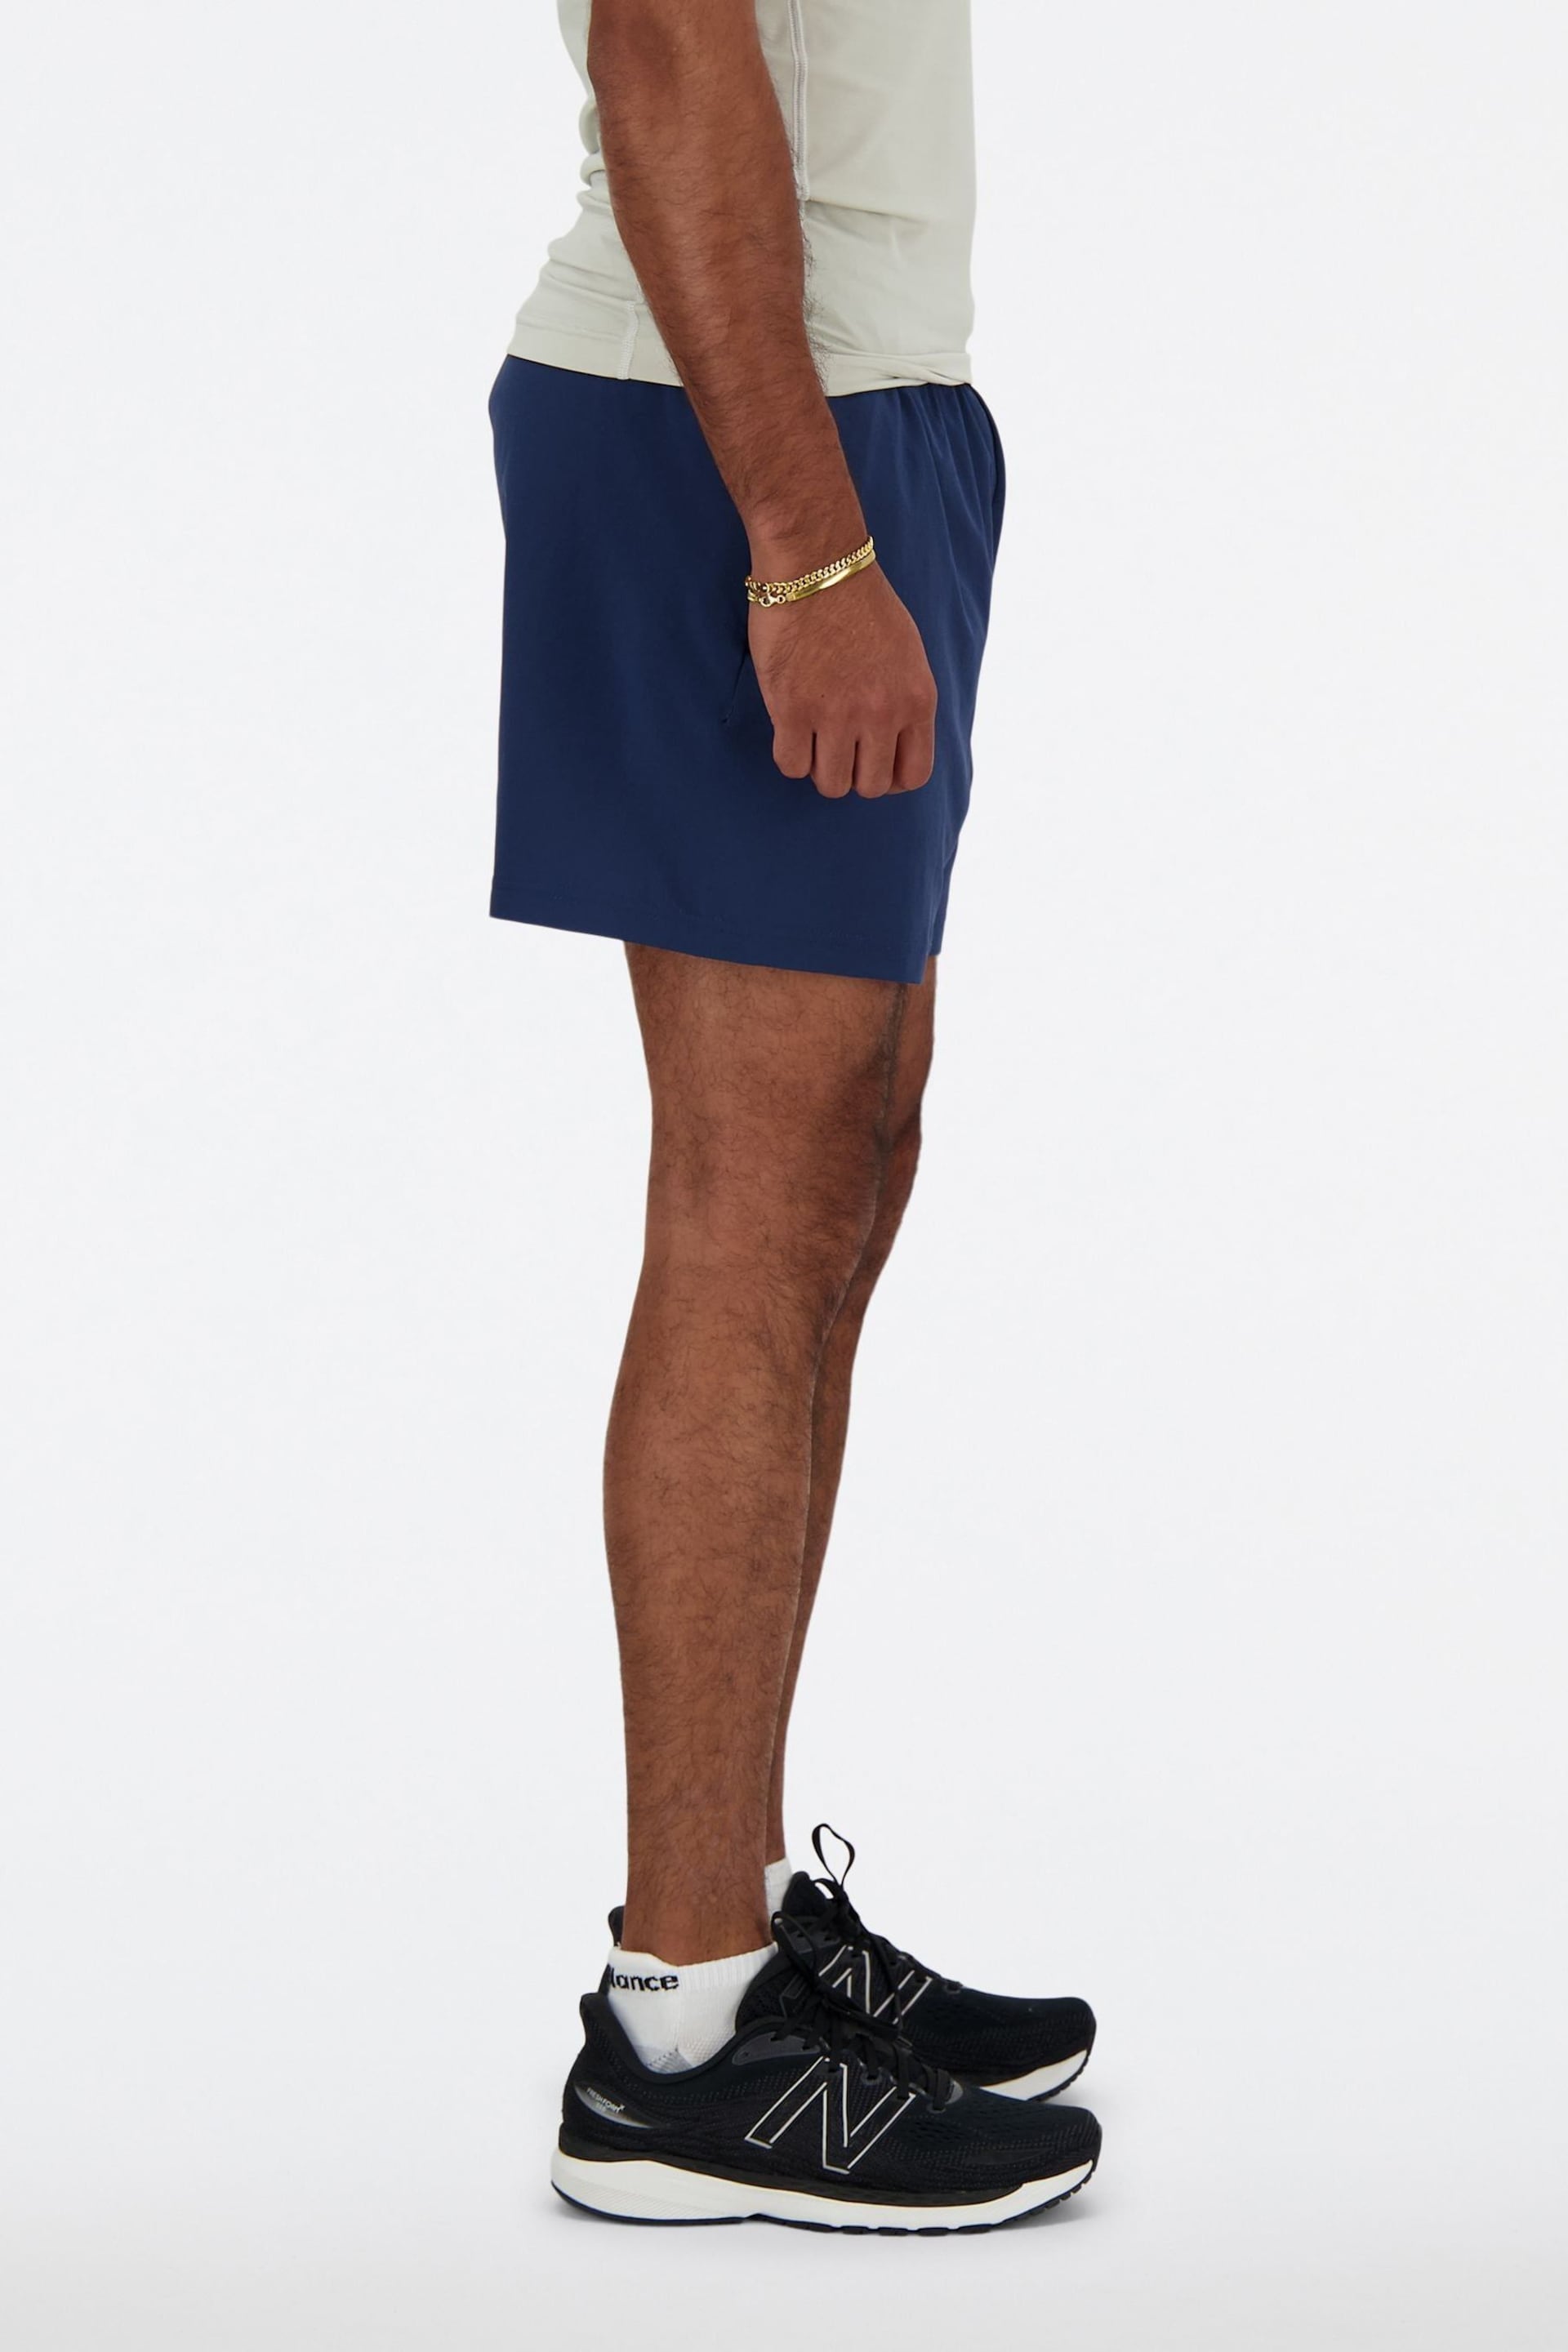 New Balance Blue 5 Inch Shorts - Image 3 of 8